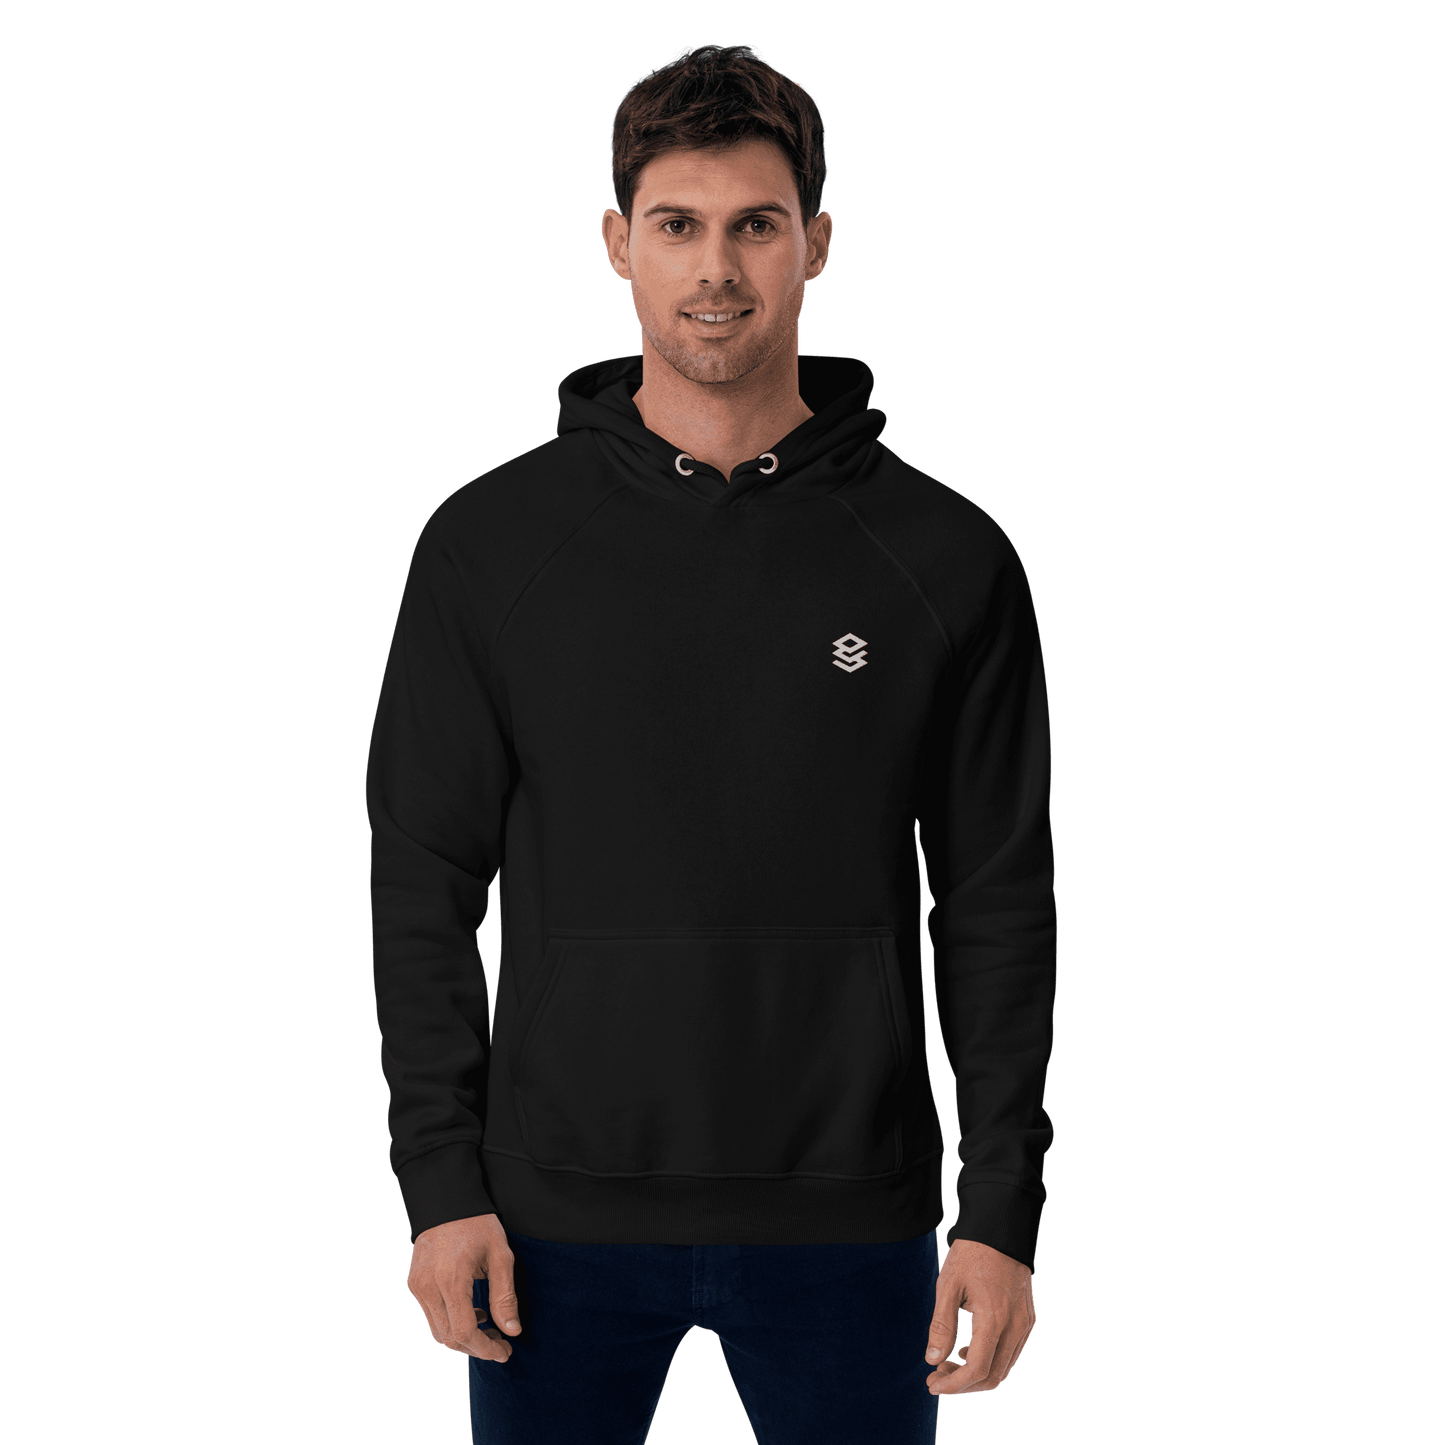 Platform engineering unisex hoodie